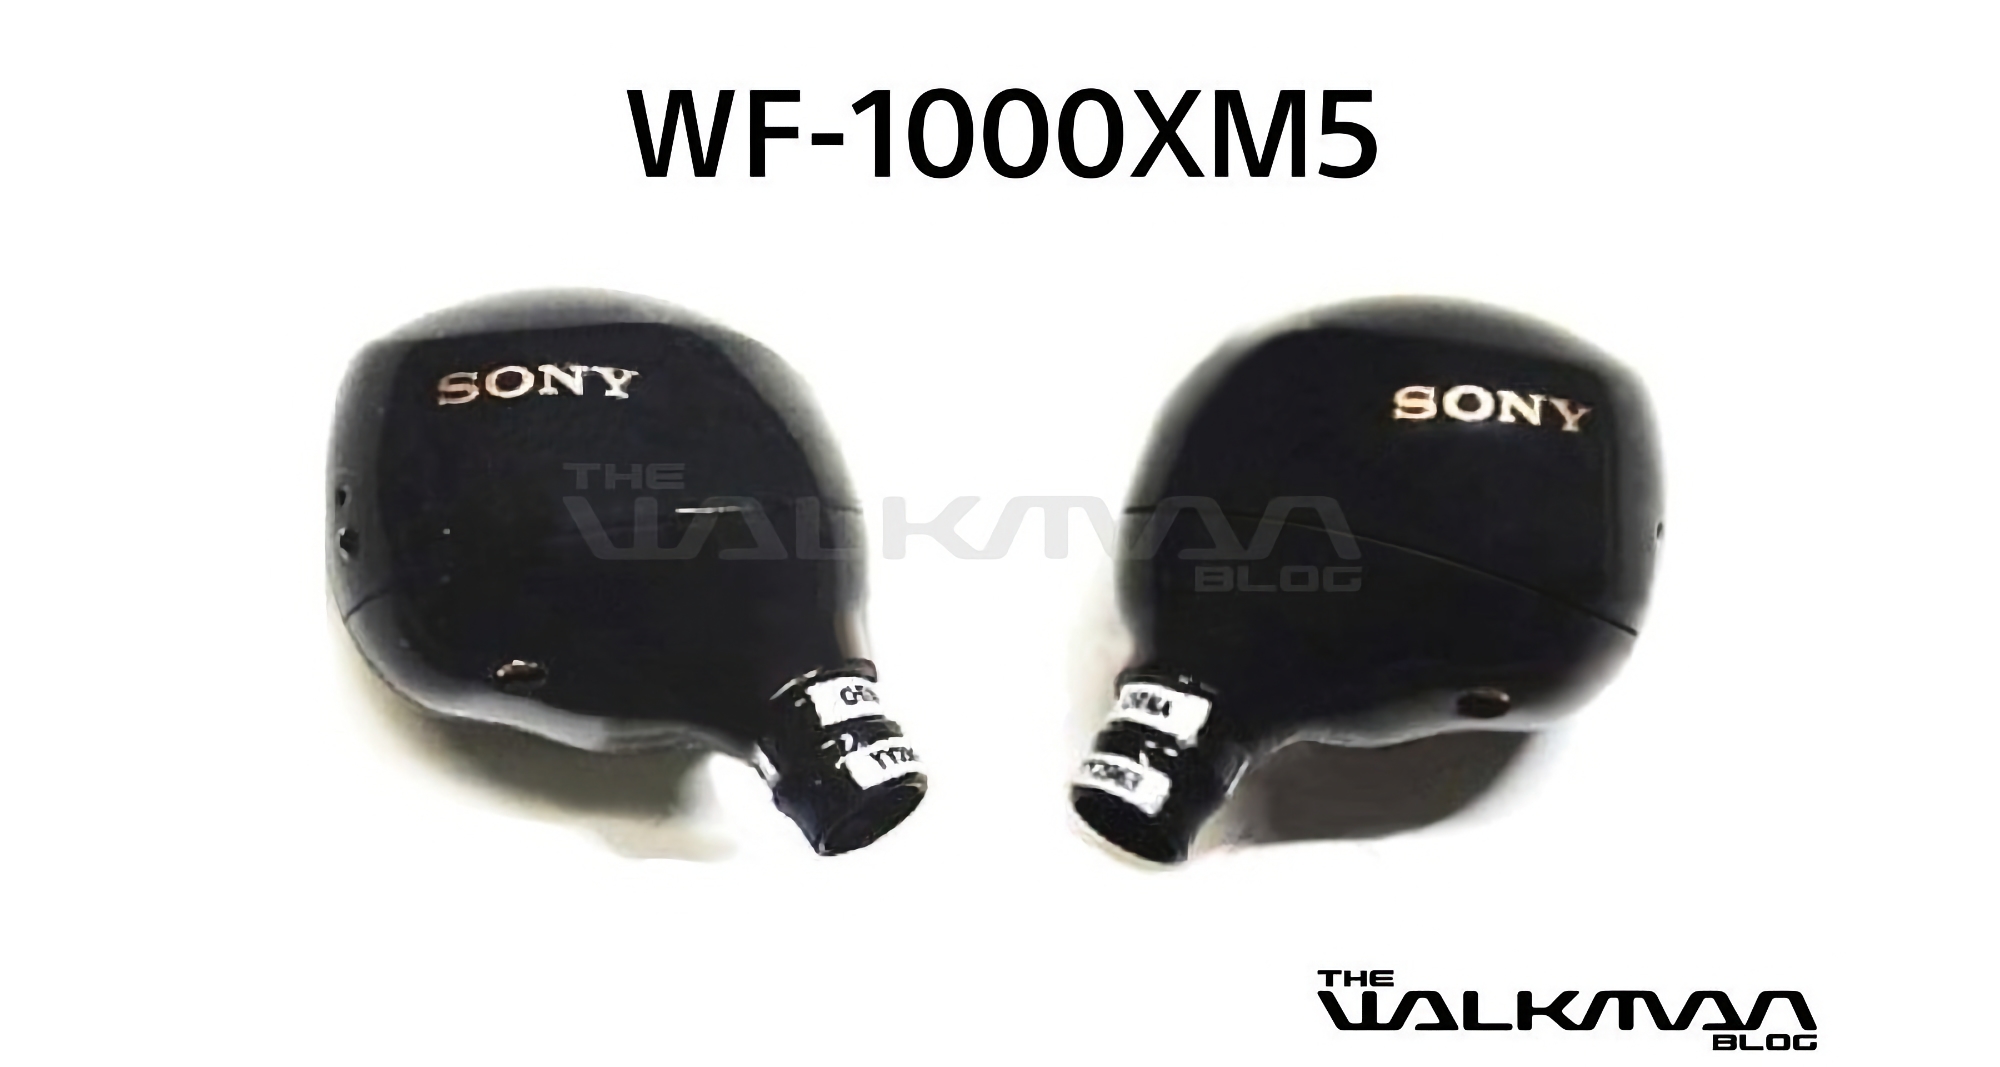 Bilder des Sony WF-1000XM5: Das neue Flaggschiff unter den TWS-Kopfhörern des Unternehmens ist online aufgetaucht